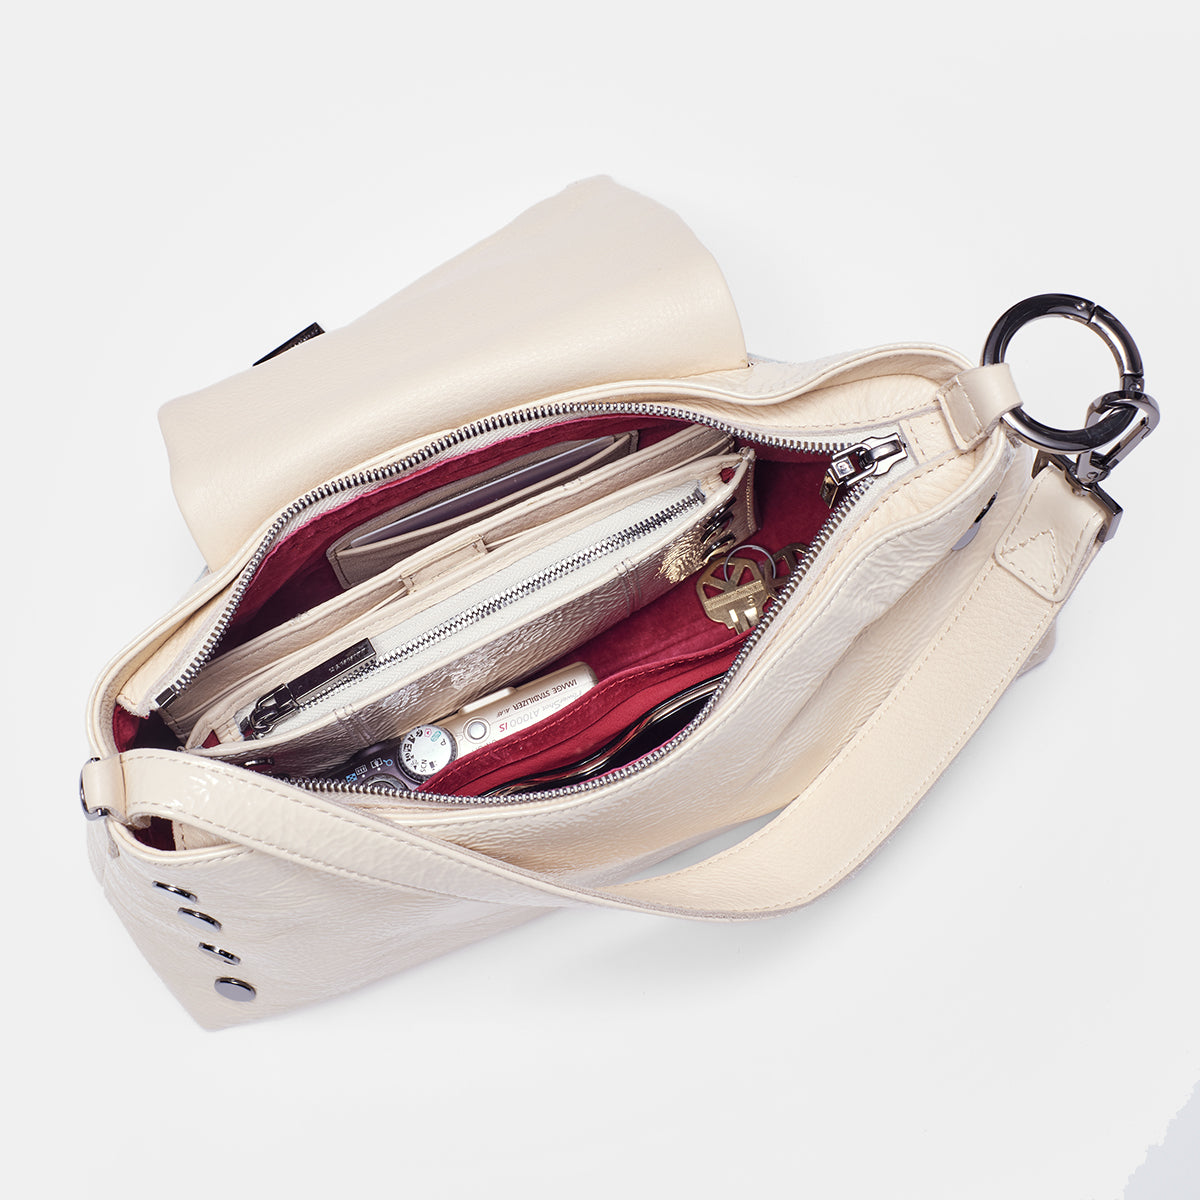 Louis Vuitton's new handbag is actually a porcelain vase - HIGHXTAR.